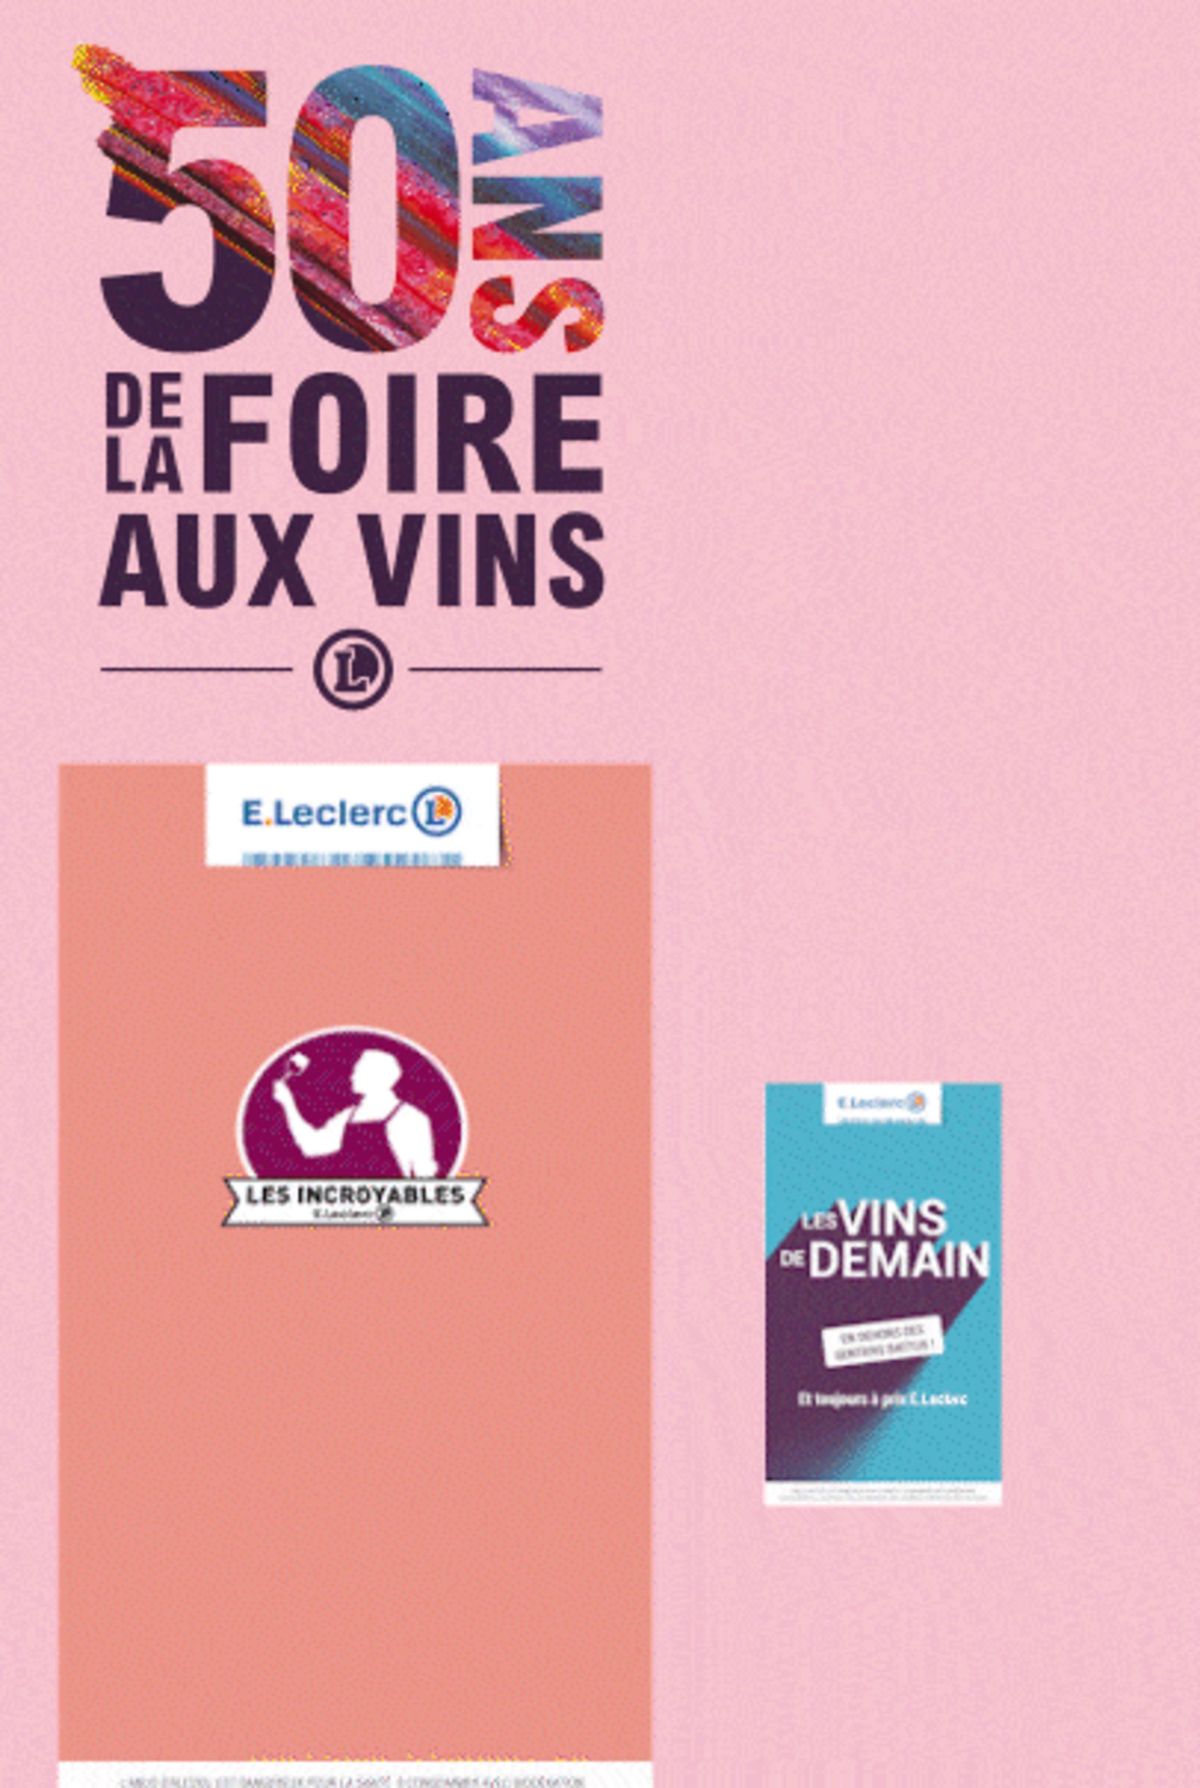 Catalogue Foire Aux Vins - Mixte, page 00614